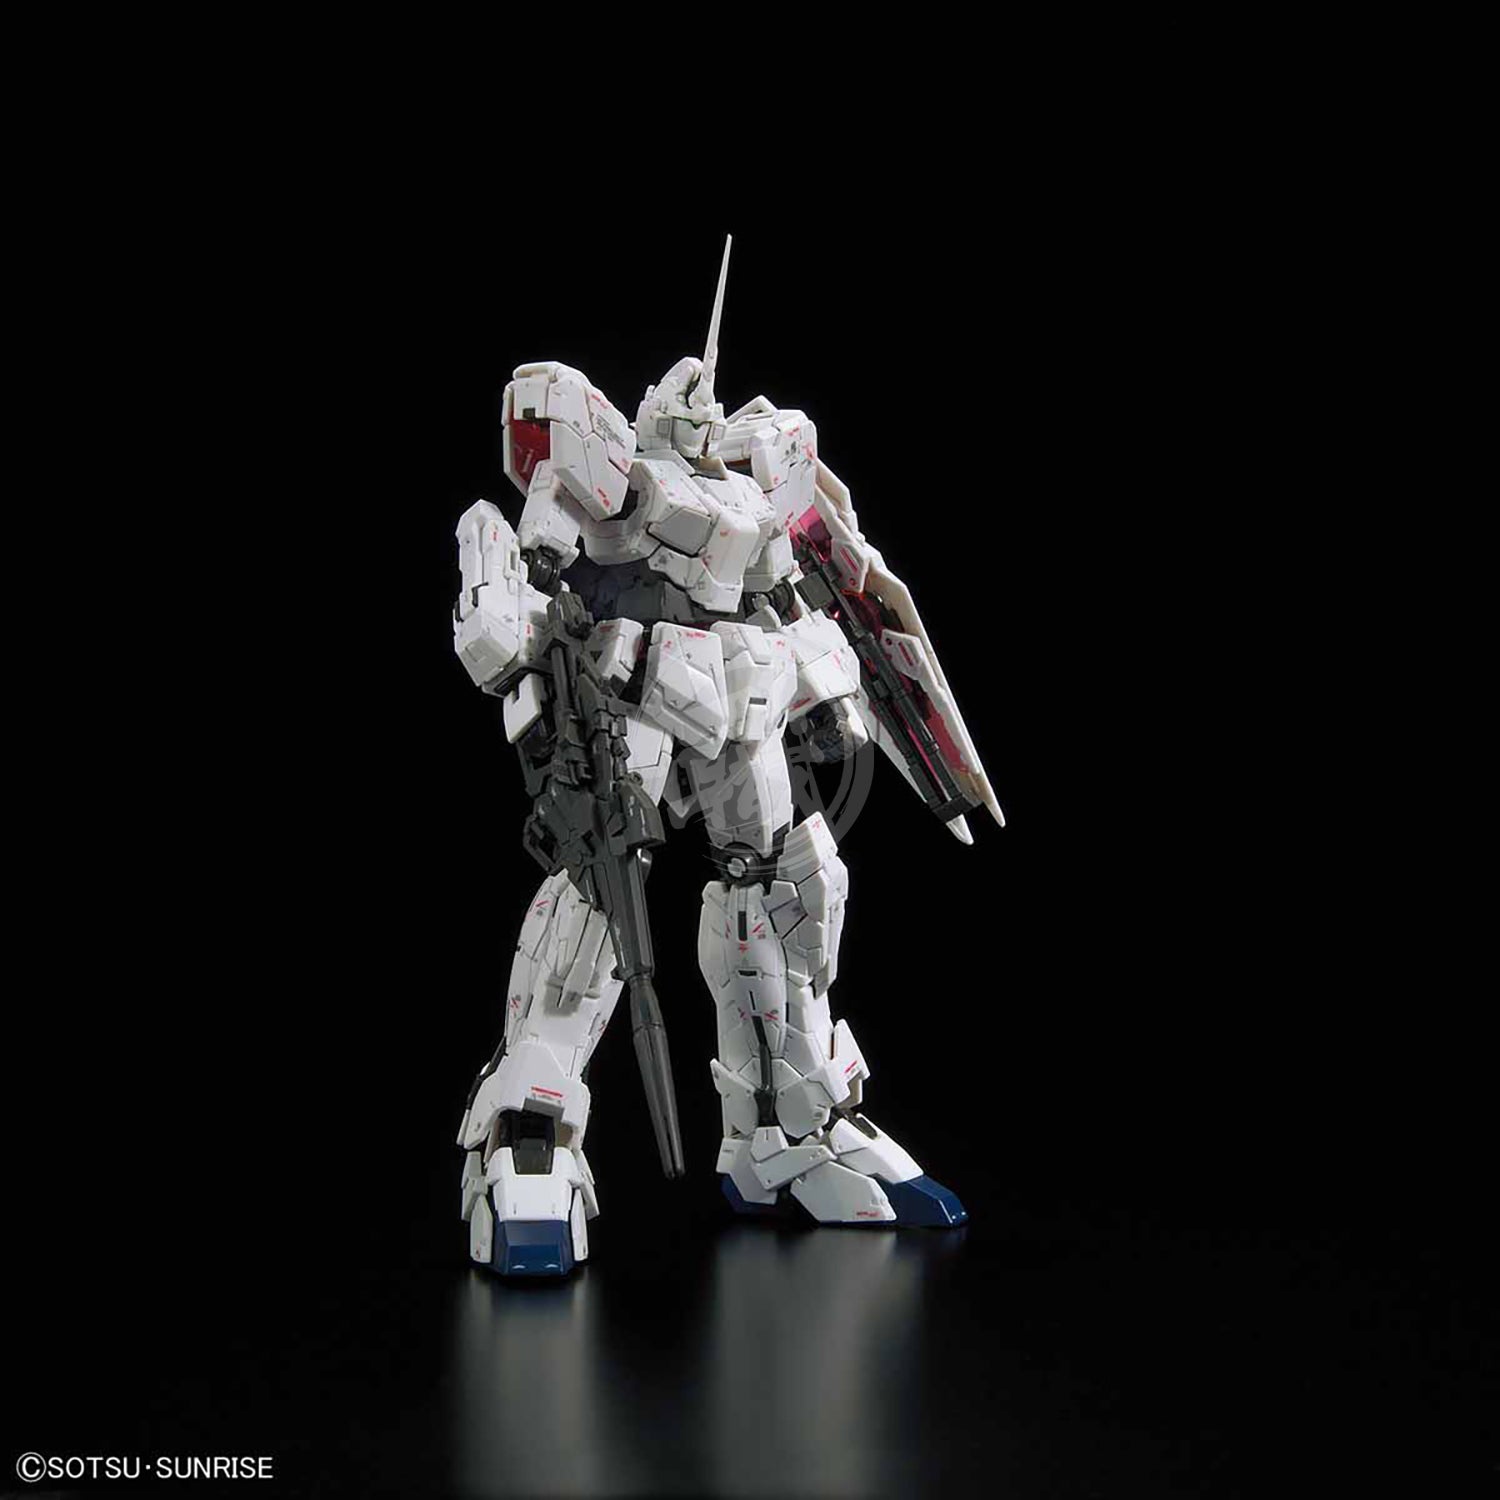 RG Unicorn Gundam - ShokuninGunpla